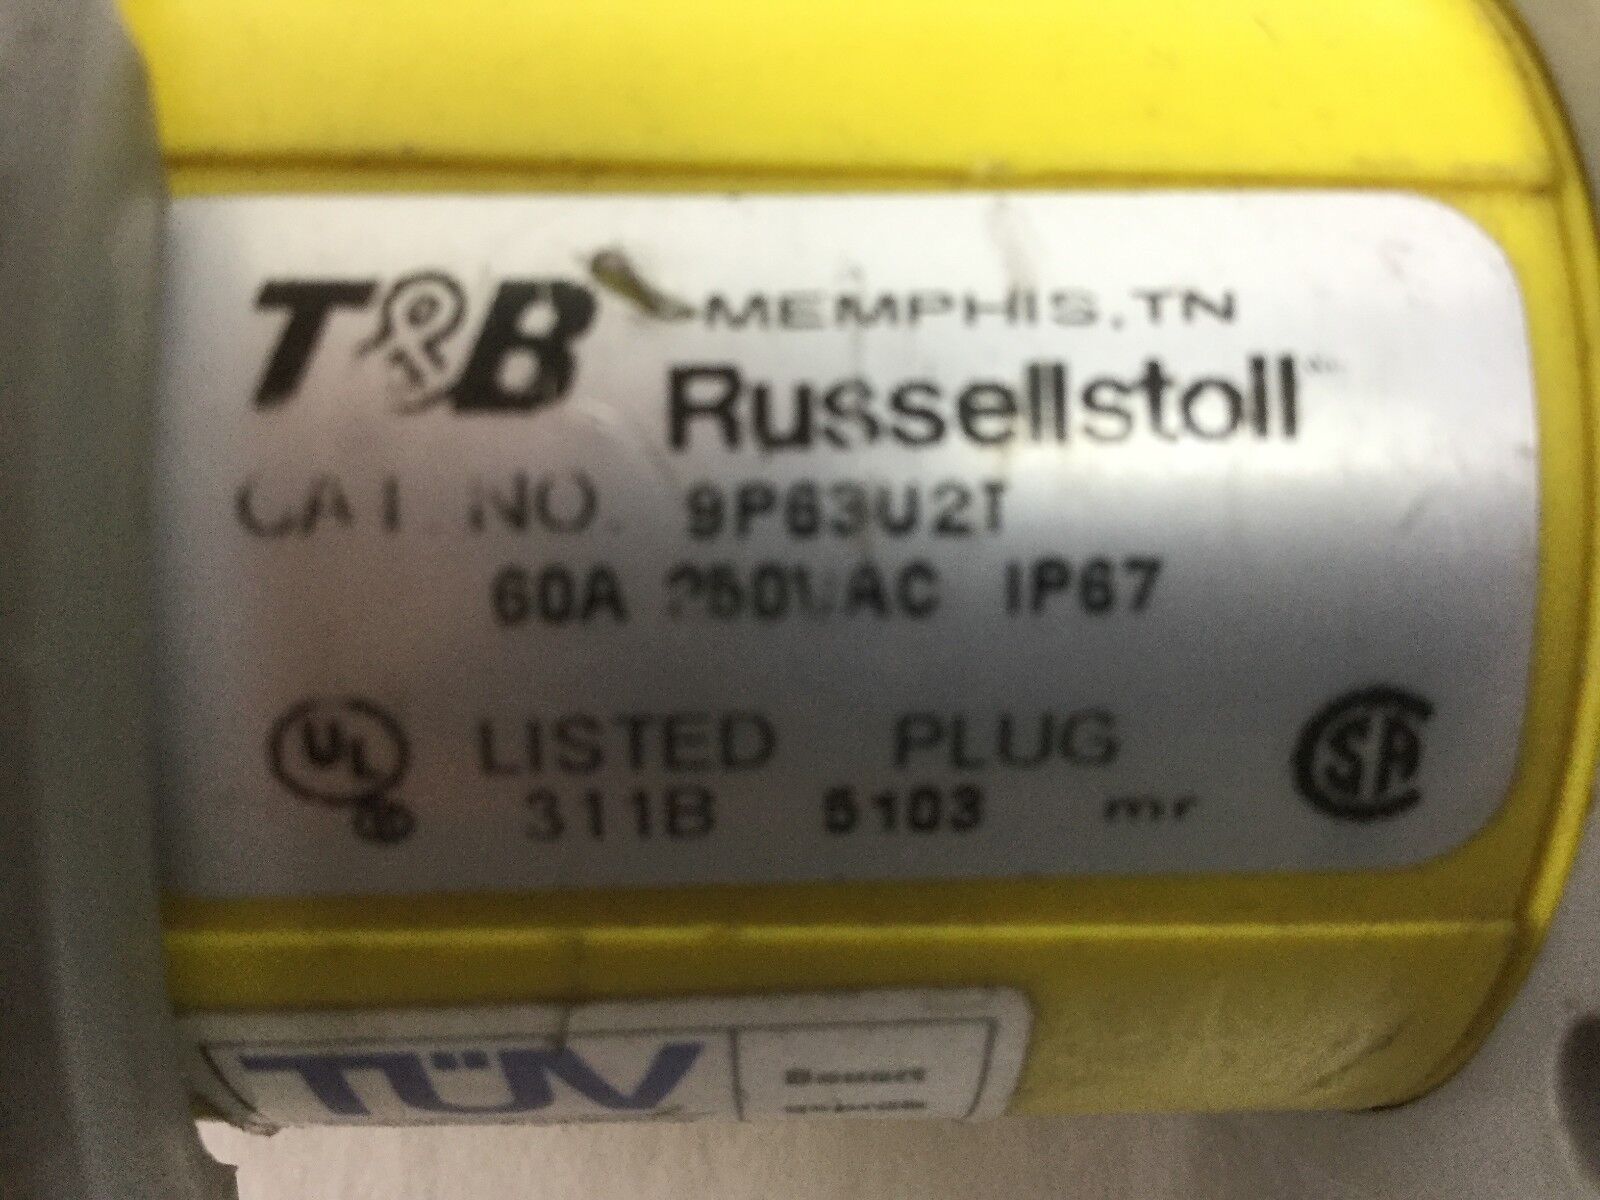 T&B Russellstoll, 9P63U2T (60A 250VAC IP67), Cracked Flange Lock